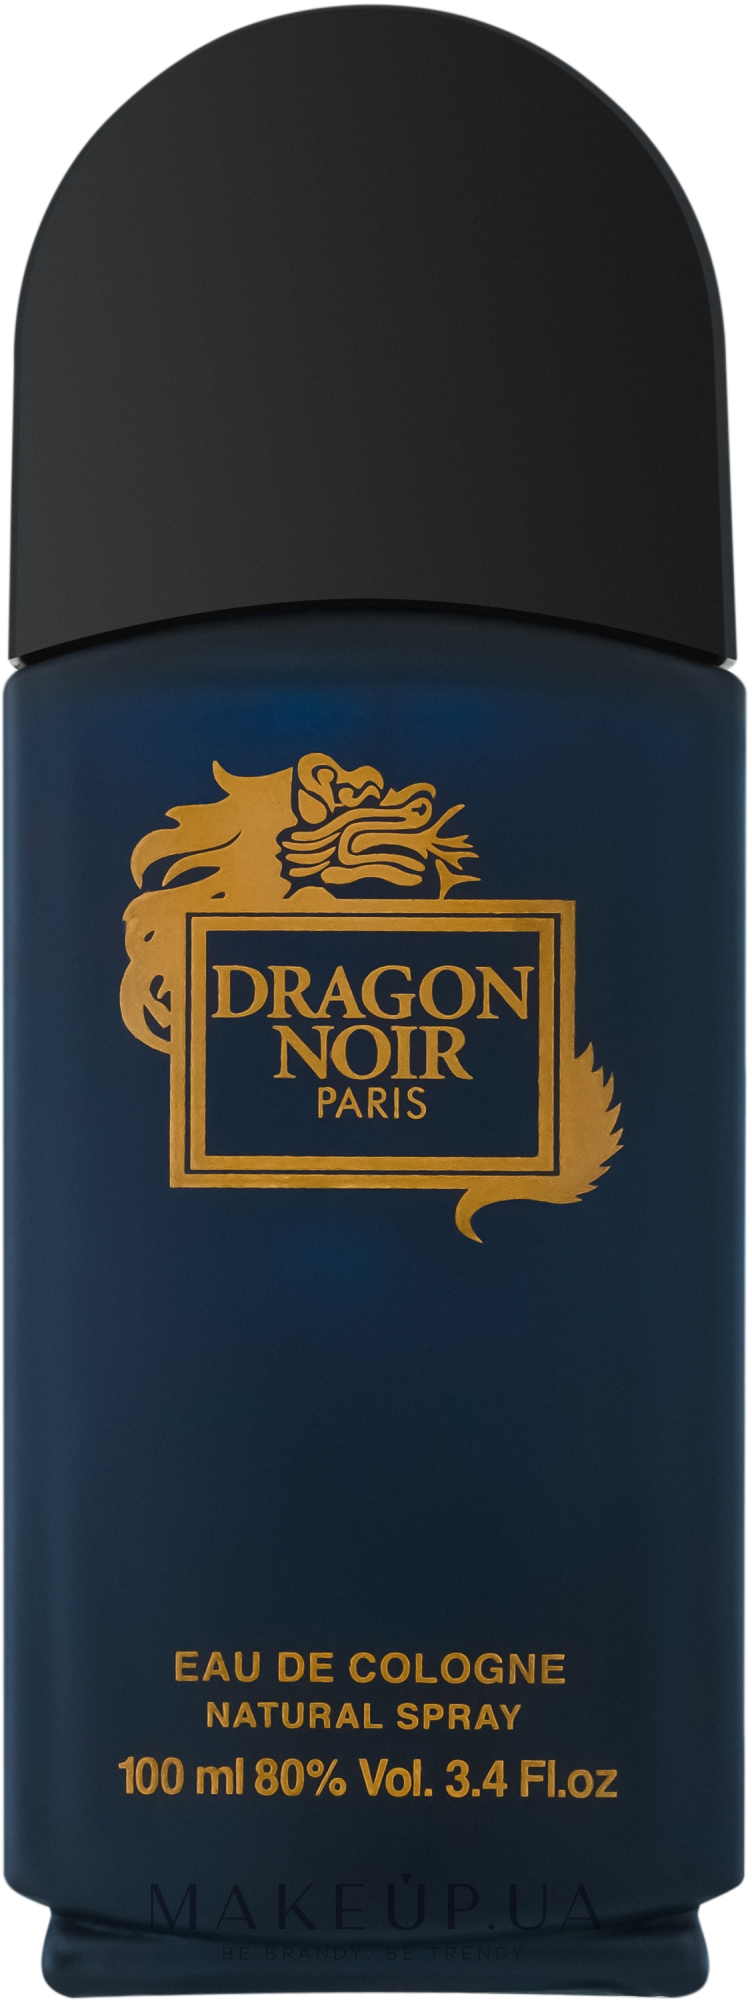 Dragon noir. Dragon Noir одеколон 100мл. Dragon Noir Eau de Cologne n.a. Cosmetic. Драгон Ноир направление аромата. Dragon Noir в 90-х.